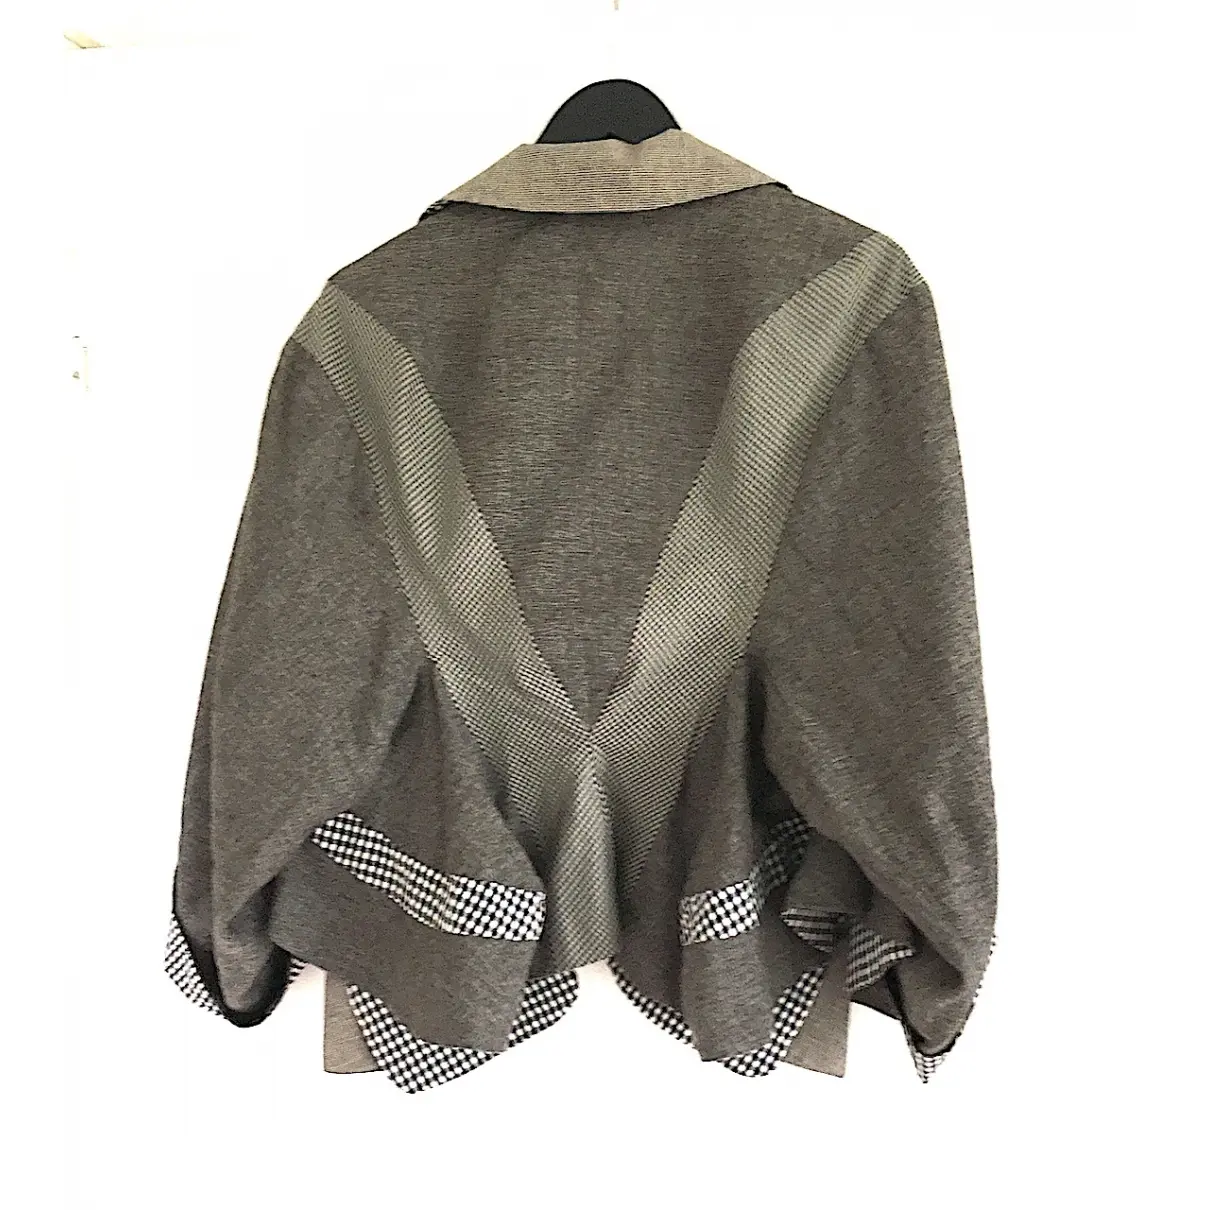 Wunderkind Linen jacket for sale - Vintage